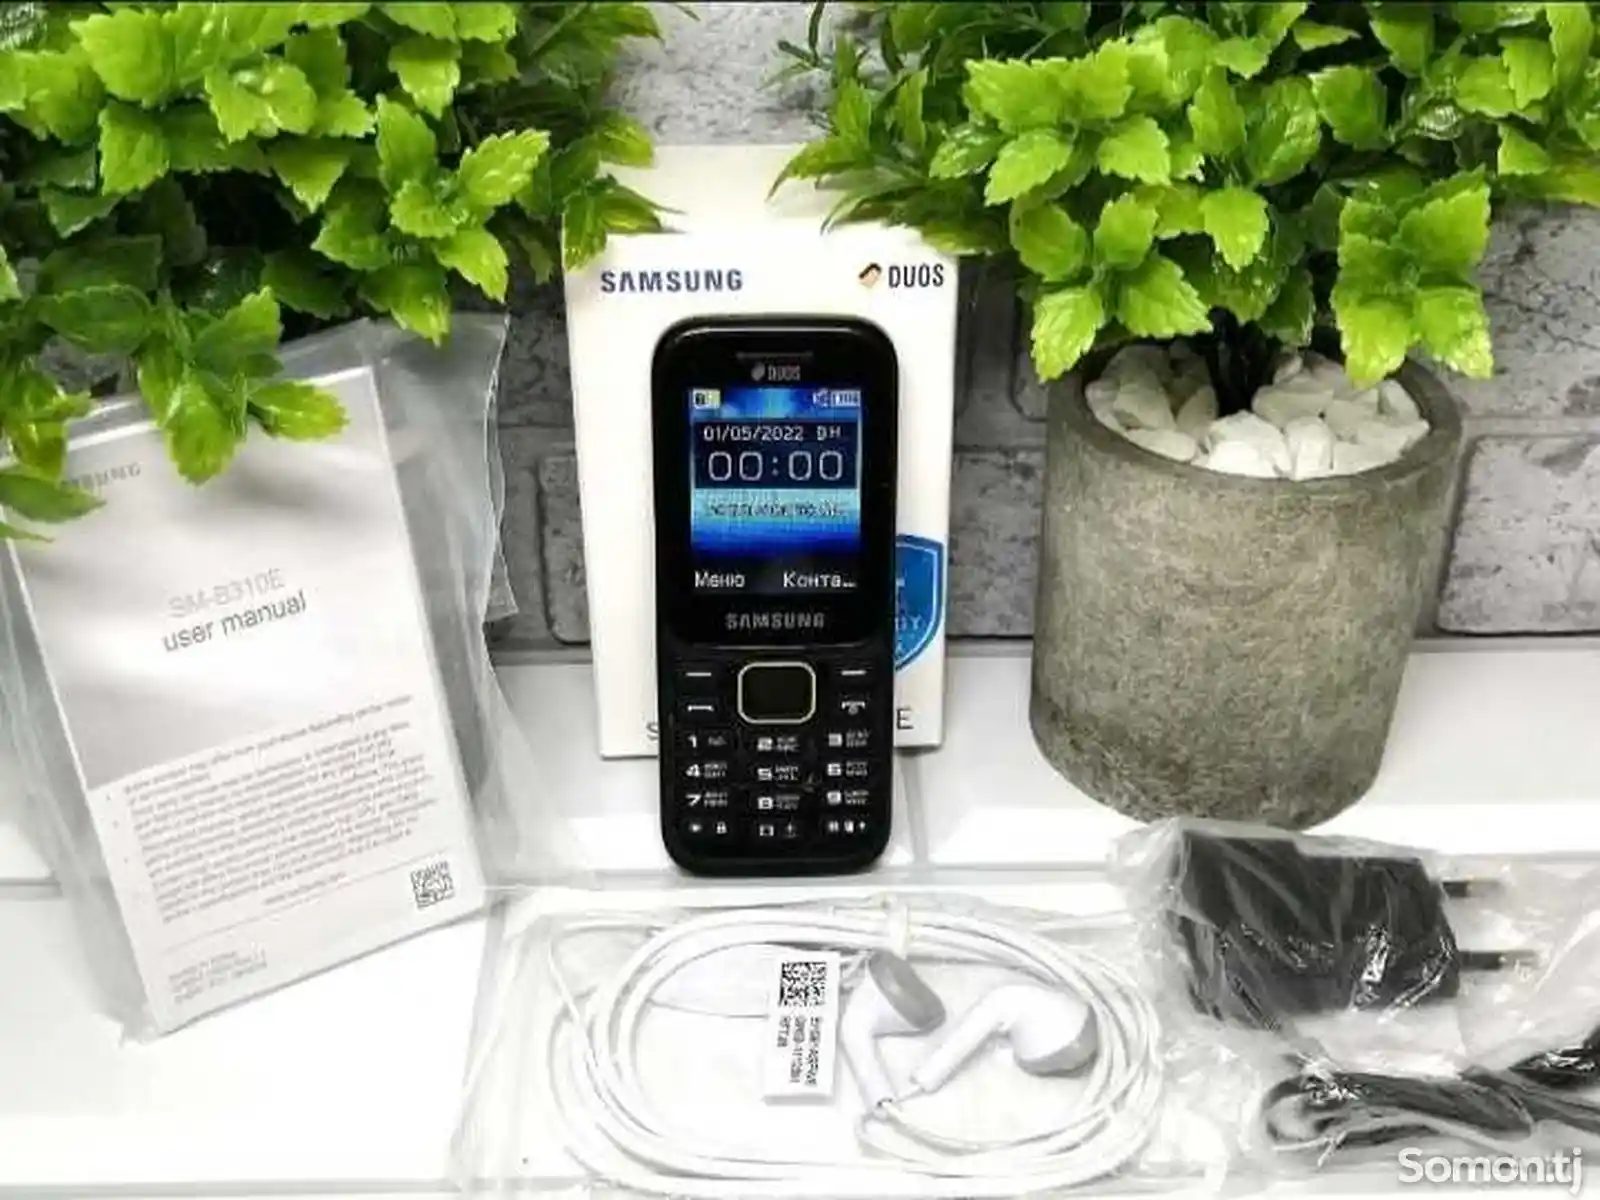 Samsung B310e-1